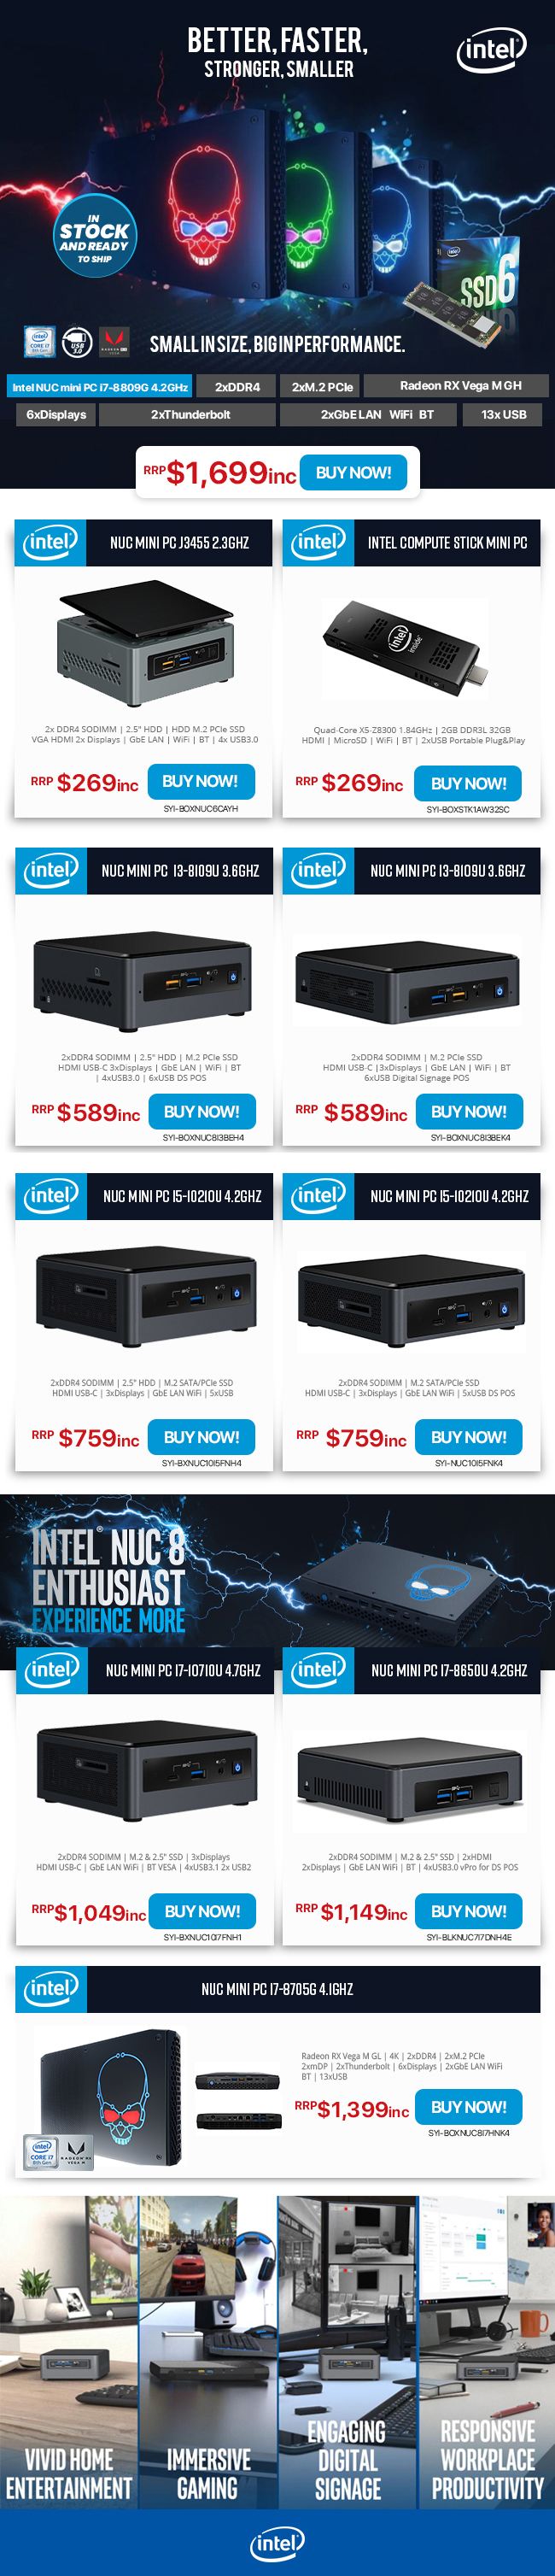 Intel Nucs